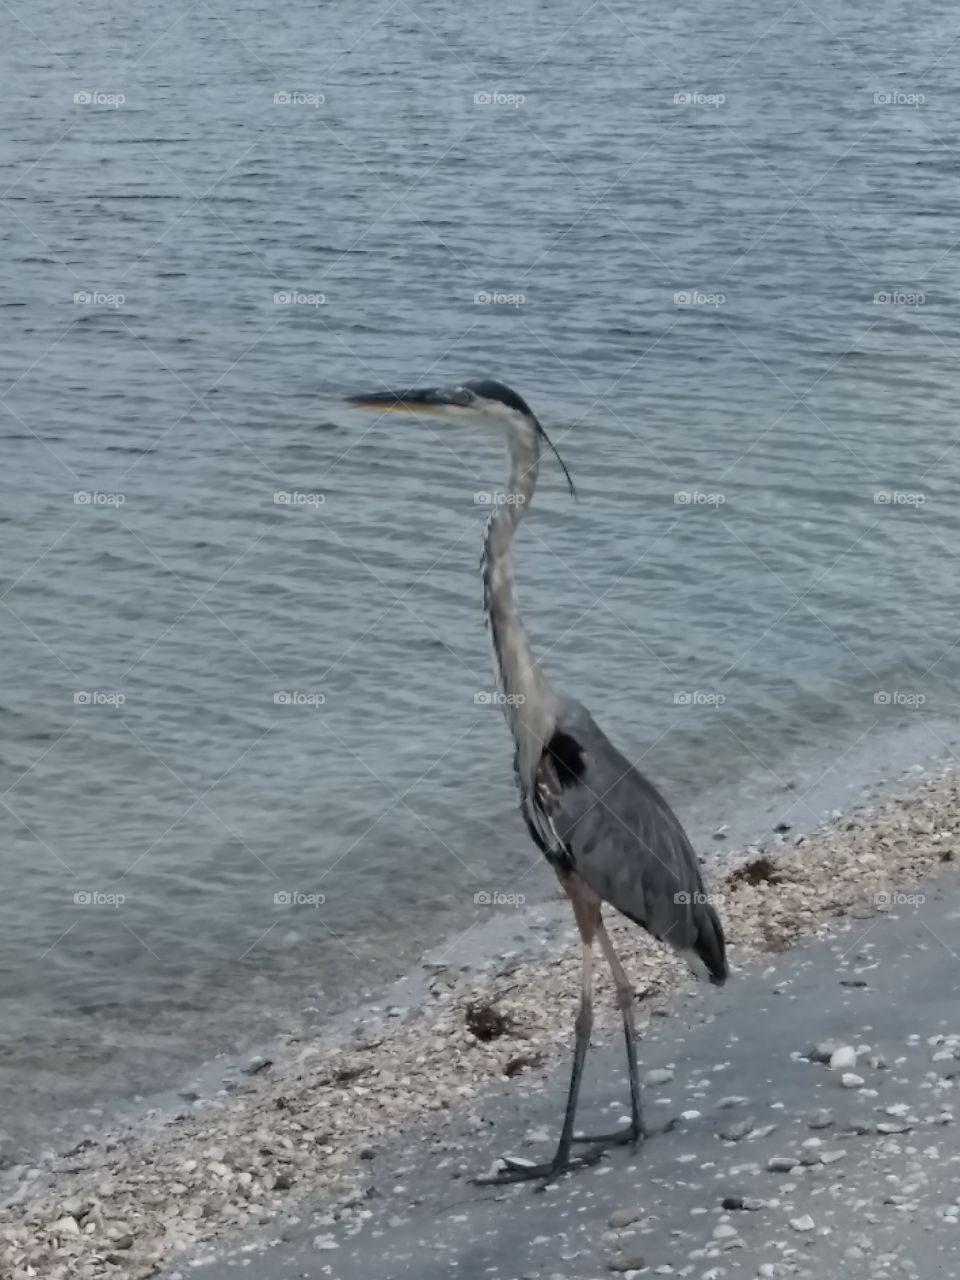 Heron on the Beach